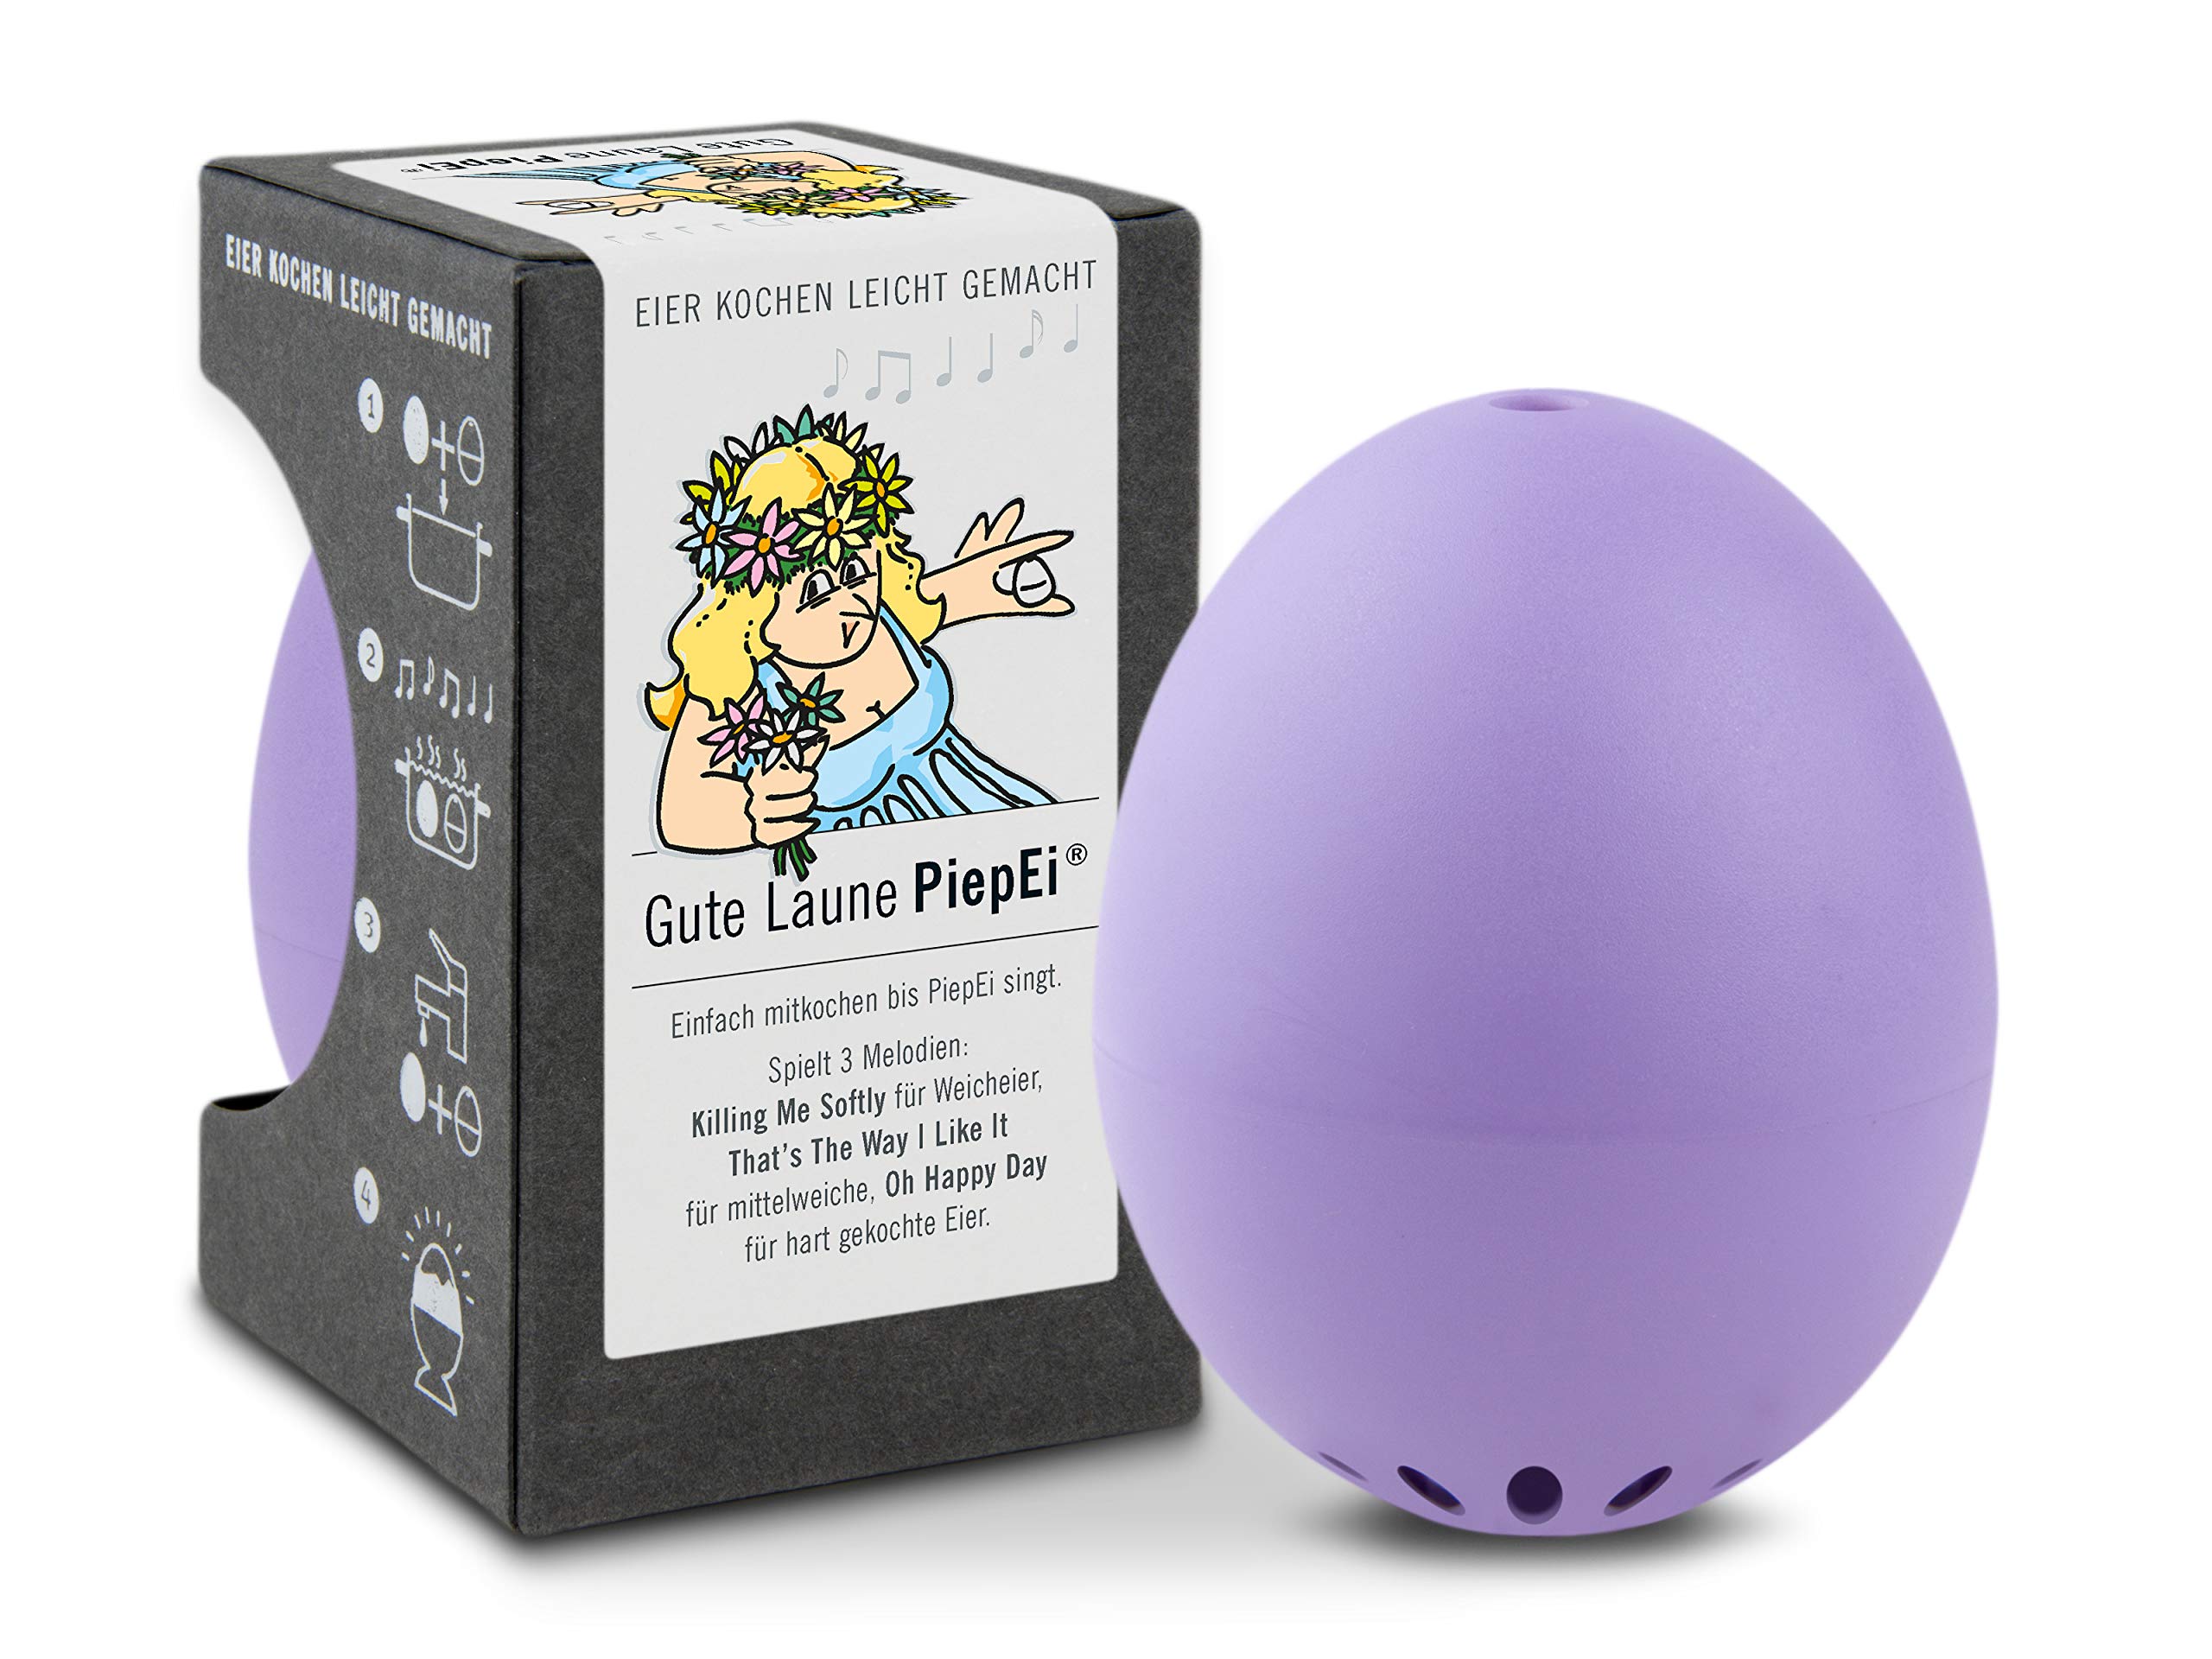 Gute Laune PiepEi Lila - Singende Eieruhr zum Mitkochen - Eierkocher für 3 Härtegrade - Gute Laune Geschenk - Lustiges Kochei - Musik Eggtimer - Brainstream